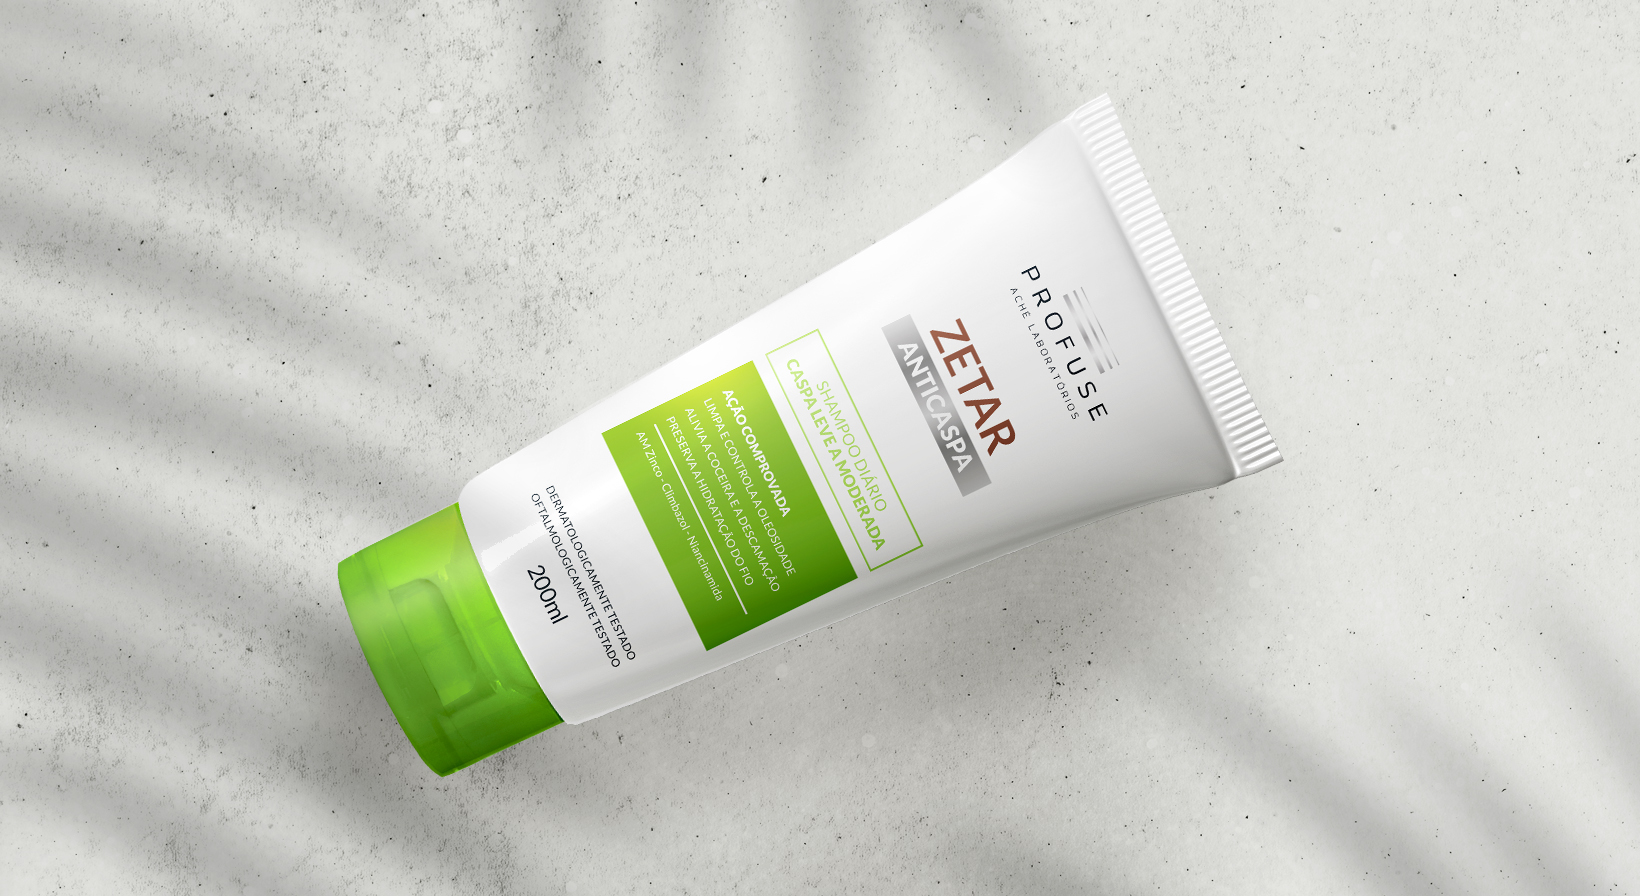 Imagem mostra o produto Zetar Diário, shampoo anticaspa